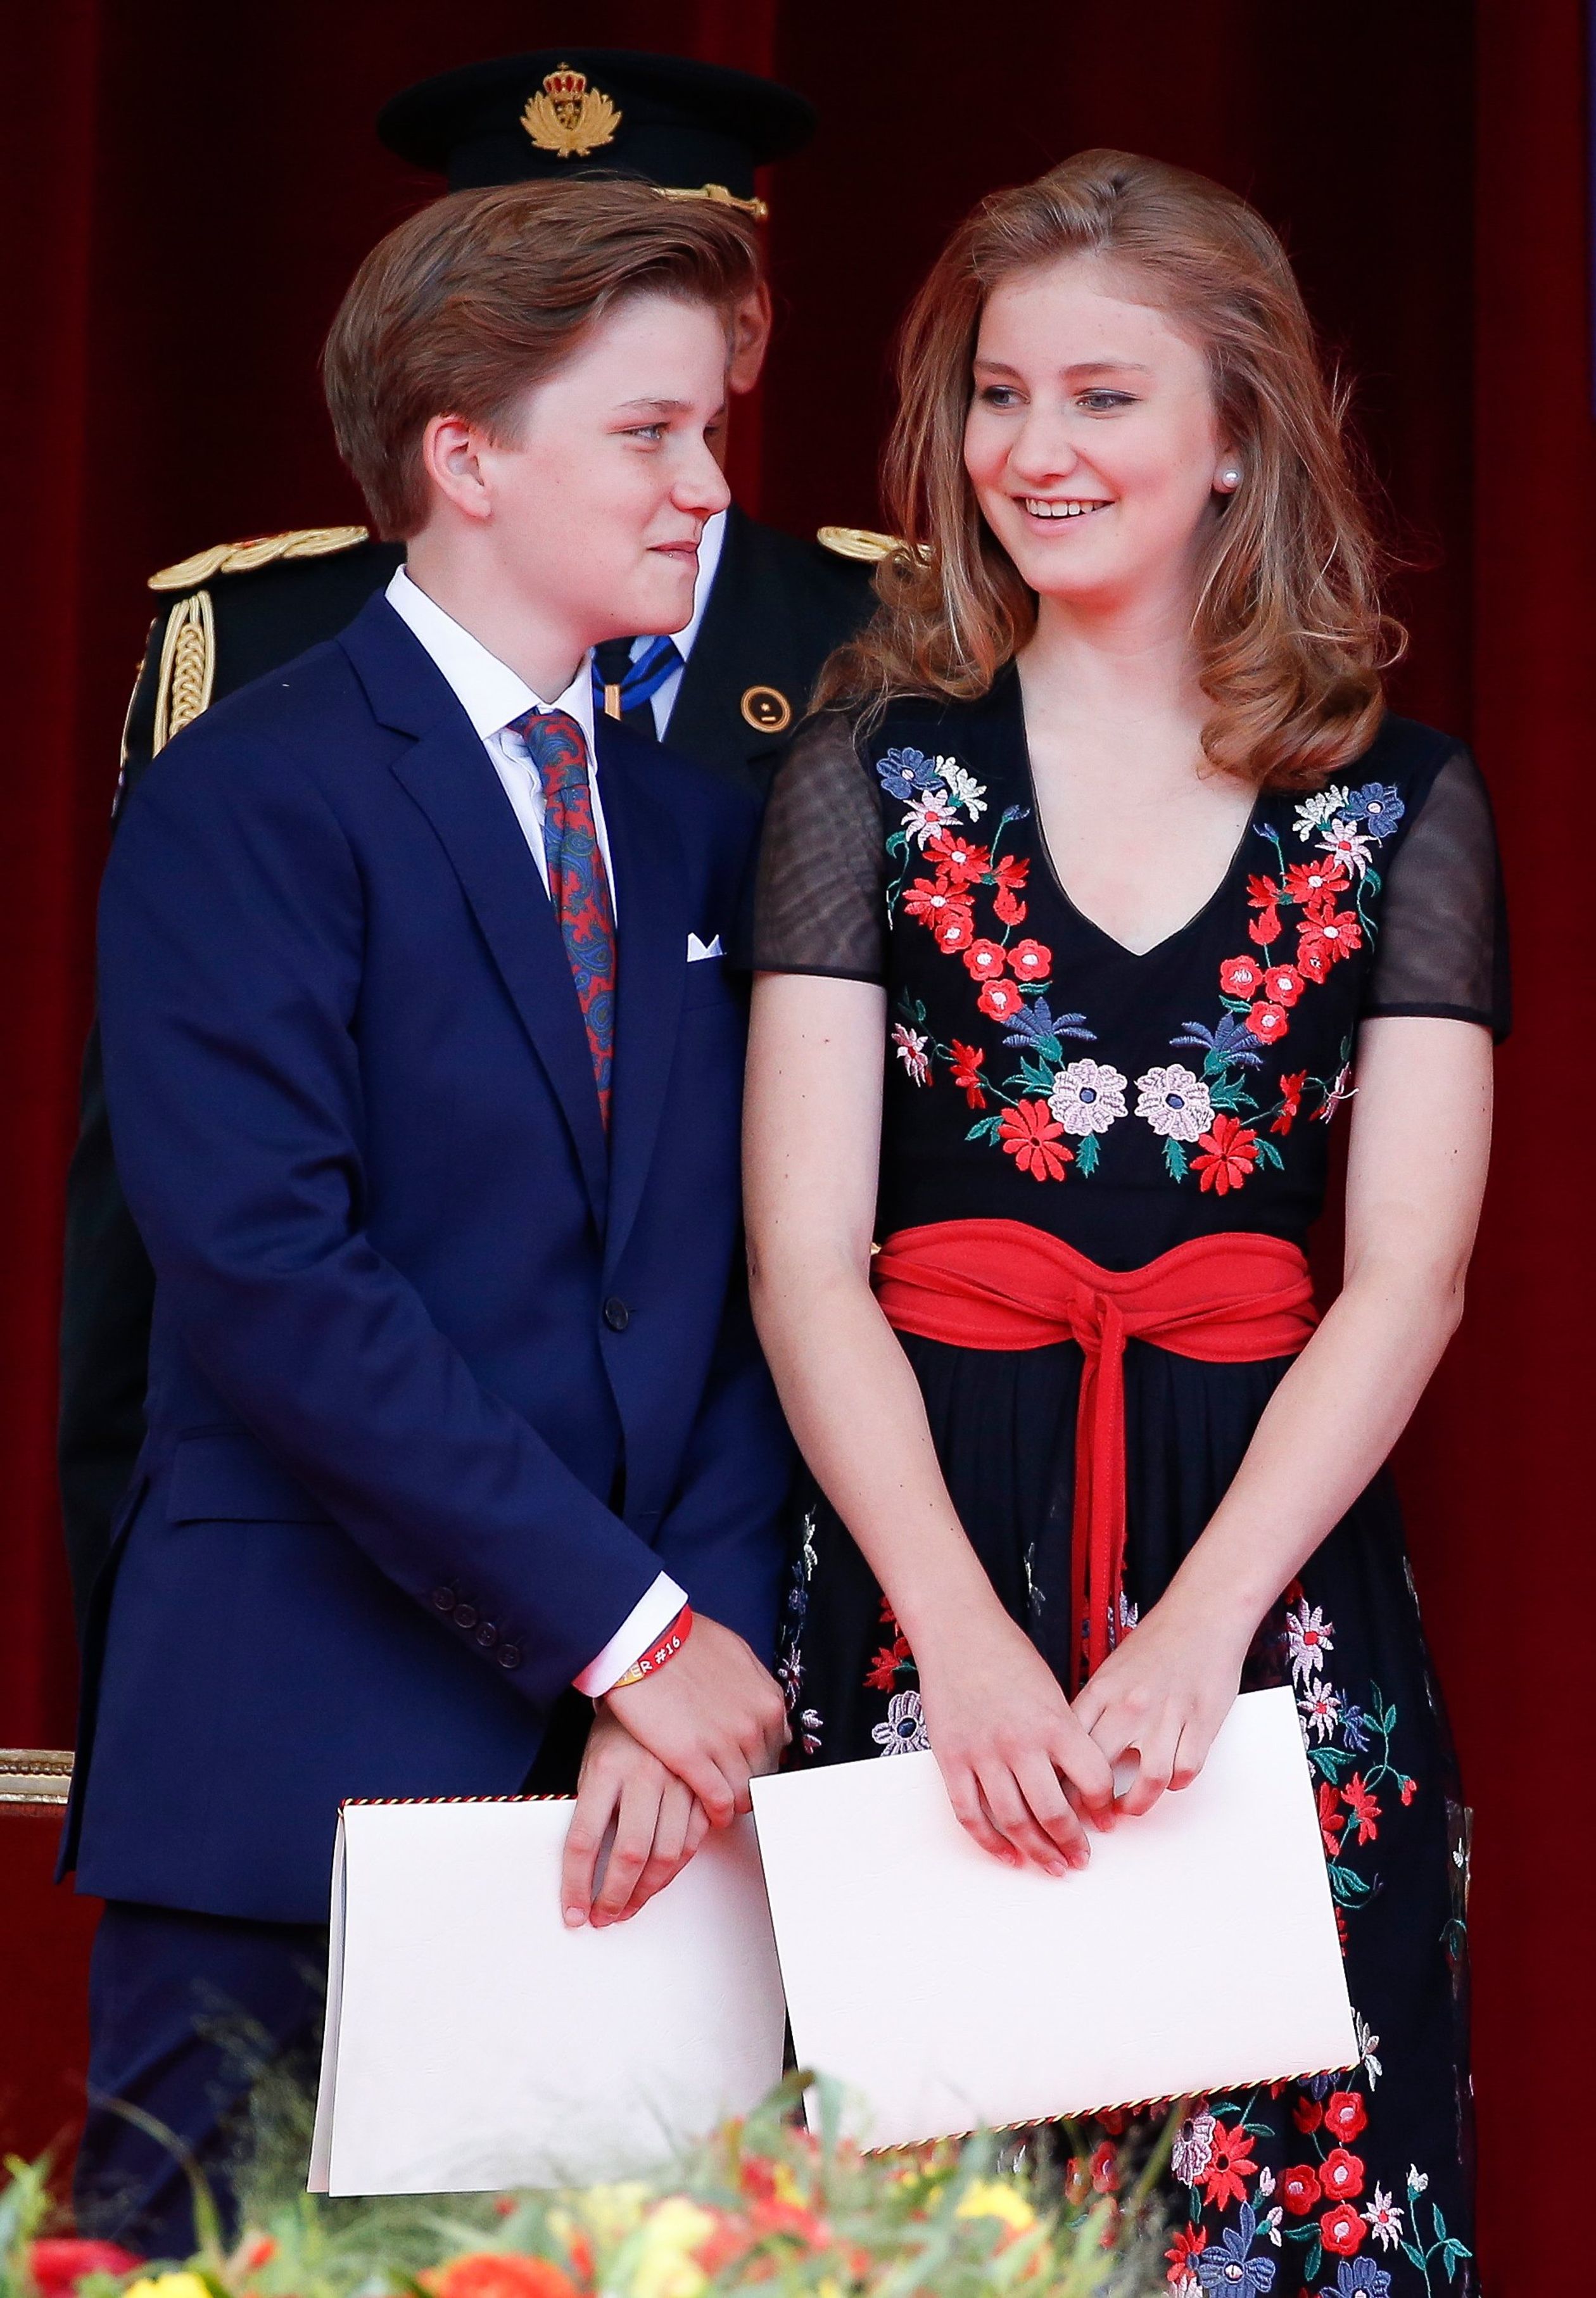 Broer en zus, de nummer 2 en de troonopvolgster van België tijdens de Nationale Feestdag in 2018.